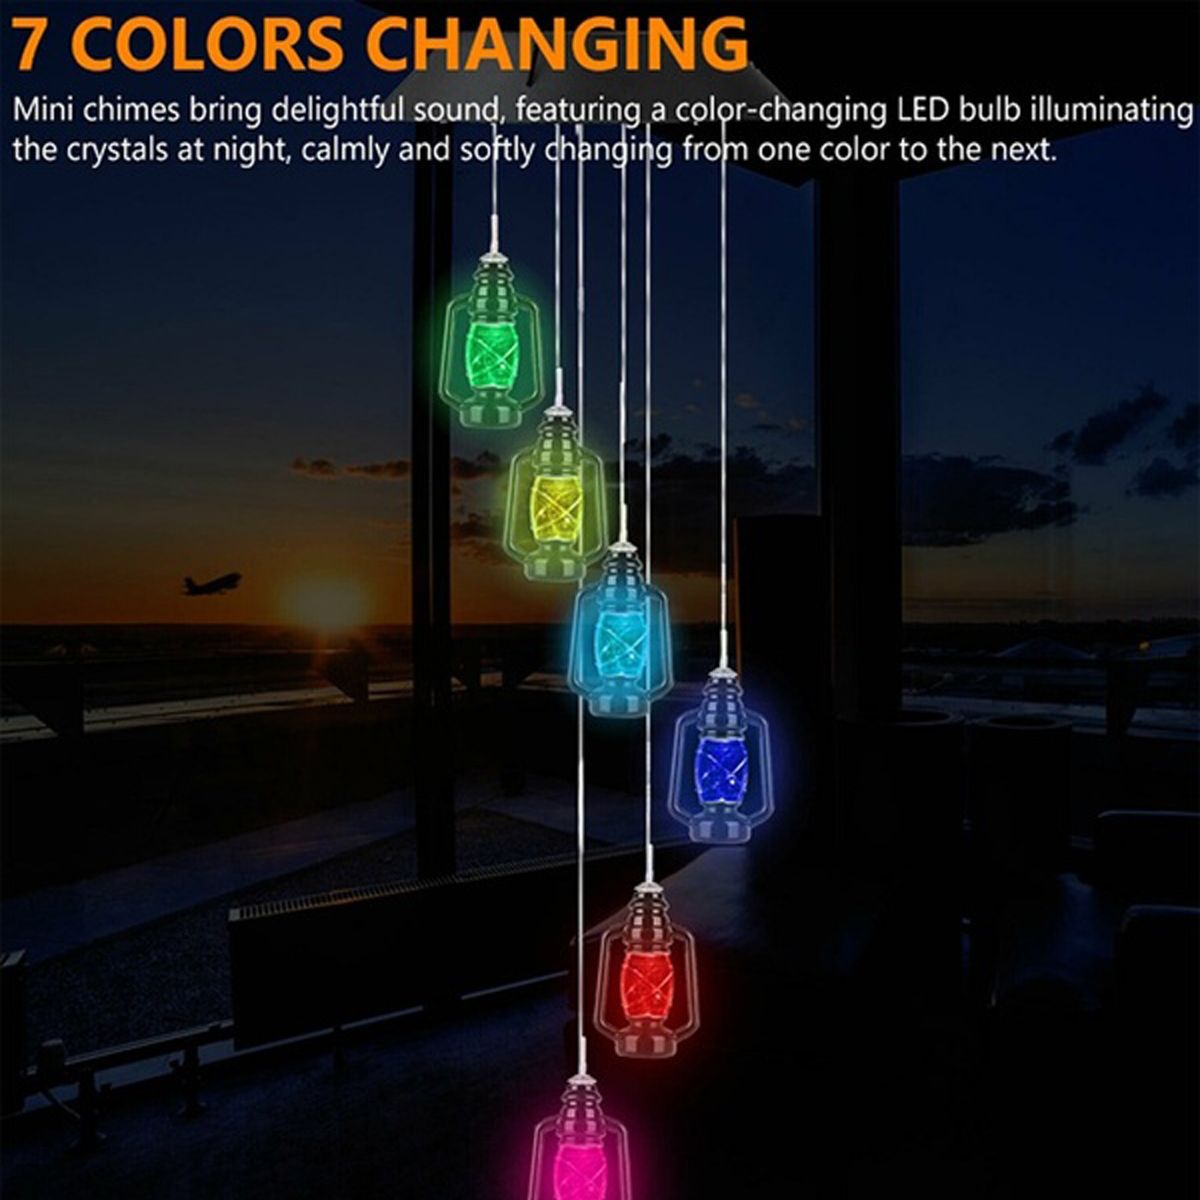 LED-Light-Solar-Light-Wind-Chime-Color-Changing-Garden-Kerosene-Bottle-1744224